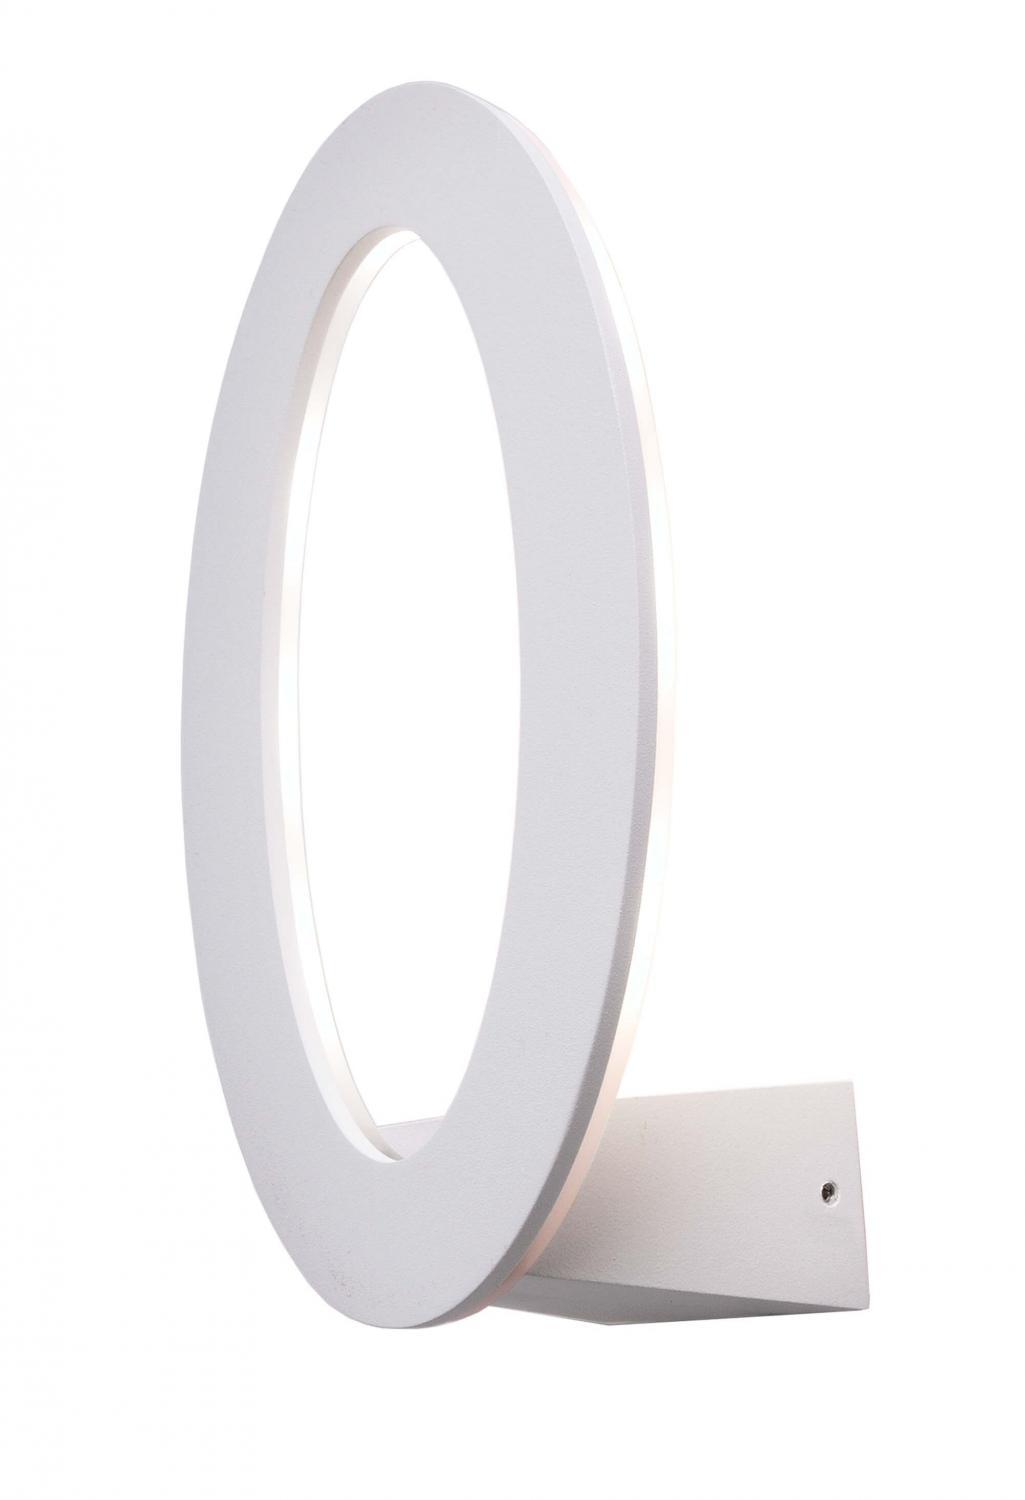 Nástěnné svítidlo Oval 7x1W 3000K, 630 lm, 230V bílá IP54 - LIGHT IMPRESSIONS